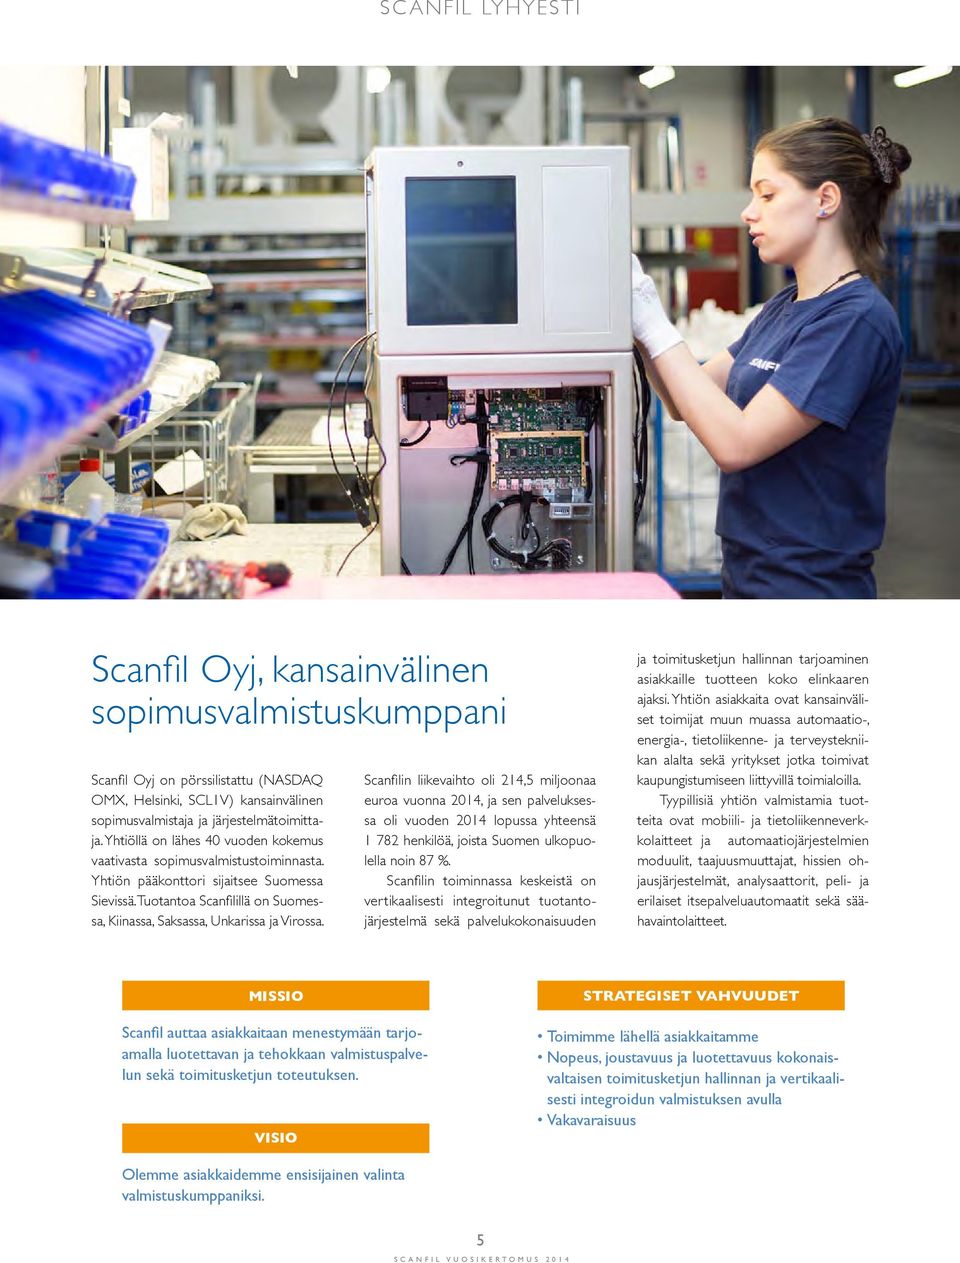 Scanfilin liikevaihto oli 214,5 miljoonaa euroa vuonna 2014, ja sen palveluksessa oli vuoden 2014 lopussa yhteensä 1 782 henkilöä, joista Suomen ulkopuolella noin 87 %.